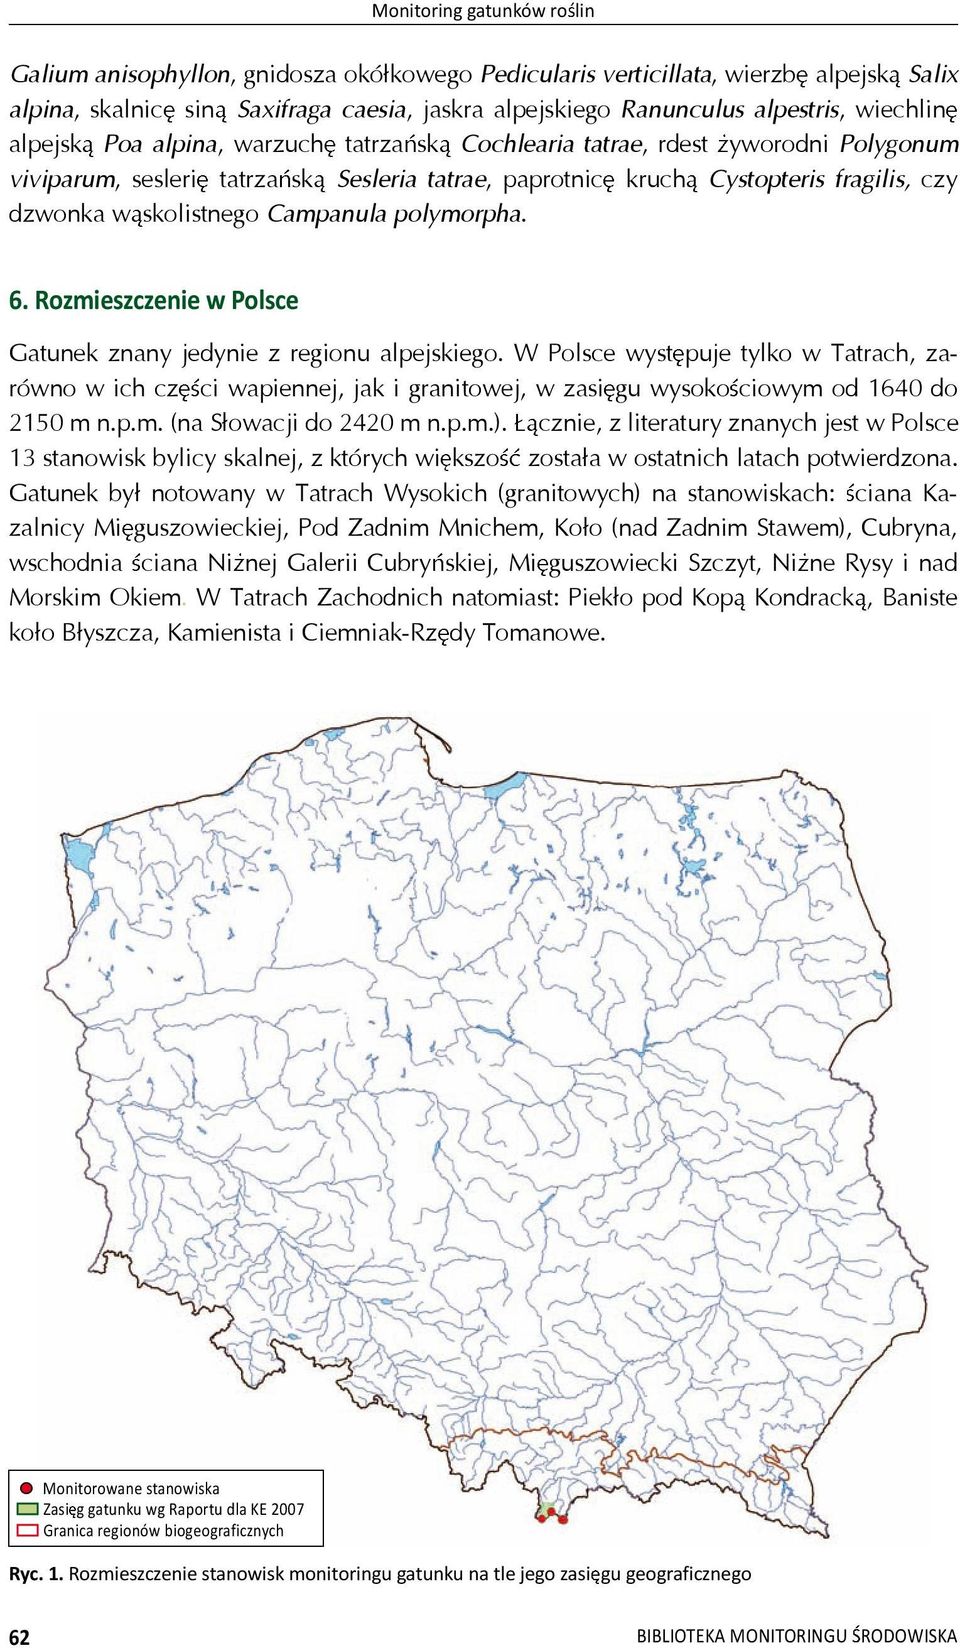 skolistnego Campanula polymorpha. 6. Rozmieszczenie w Polsce Gatunek znany jedynie z regionu alpejskiego.